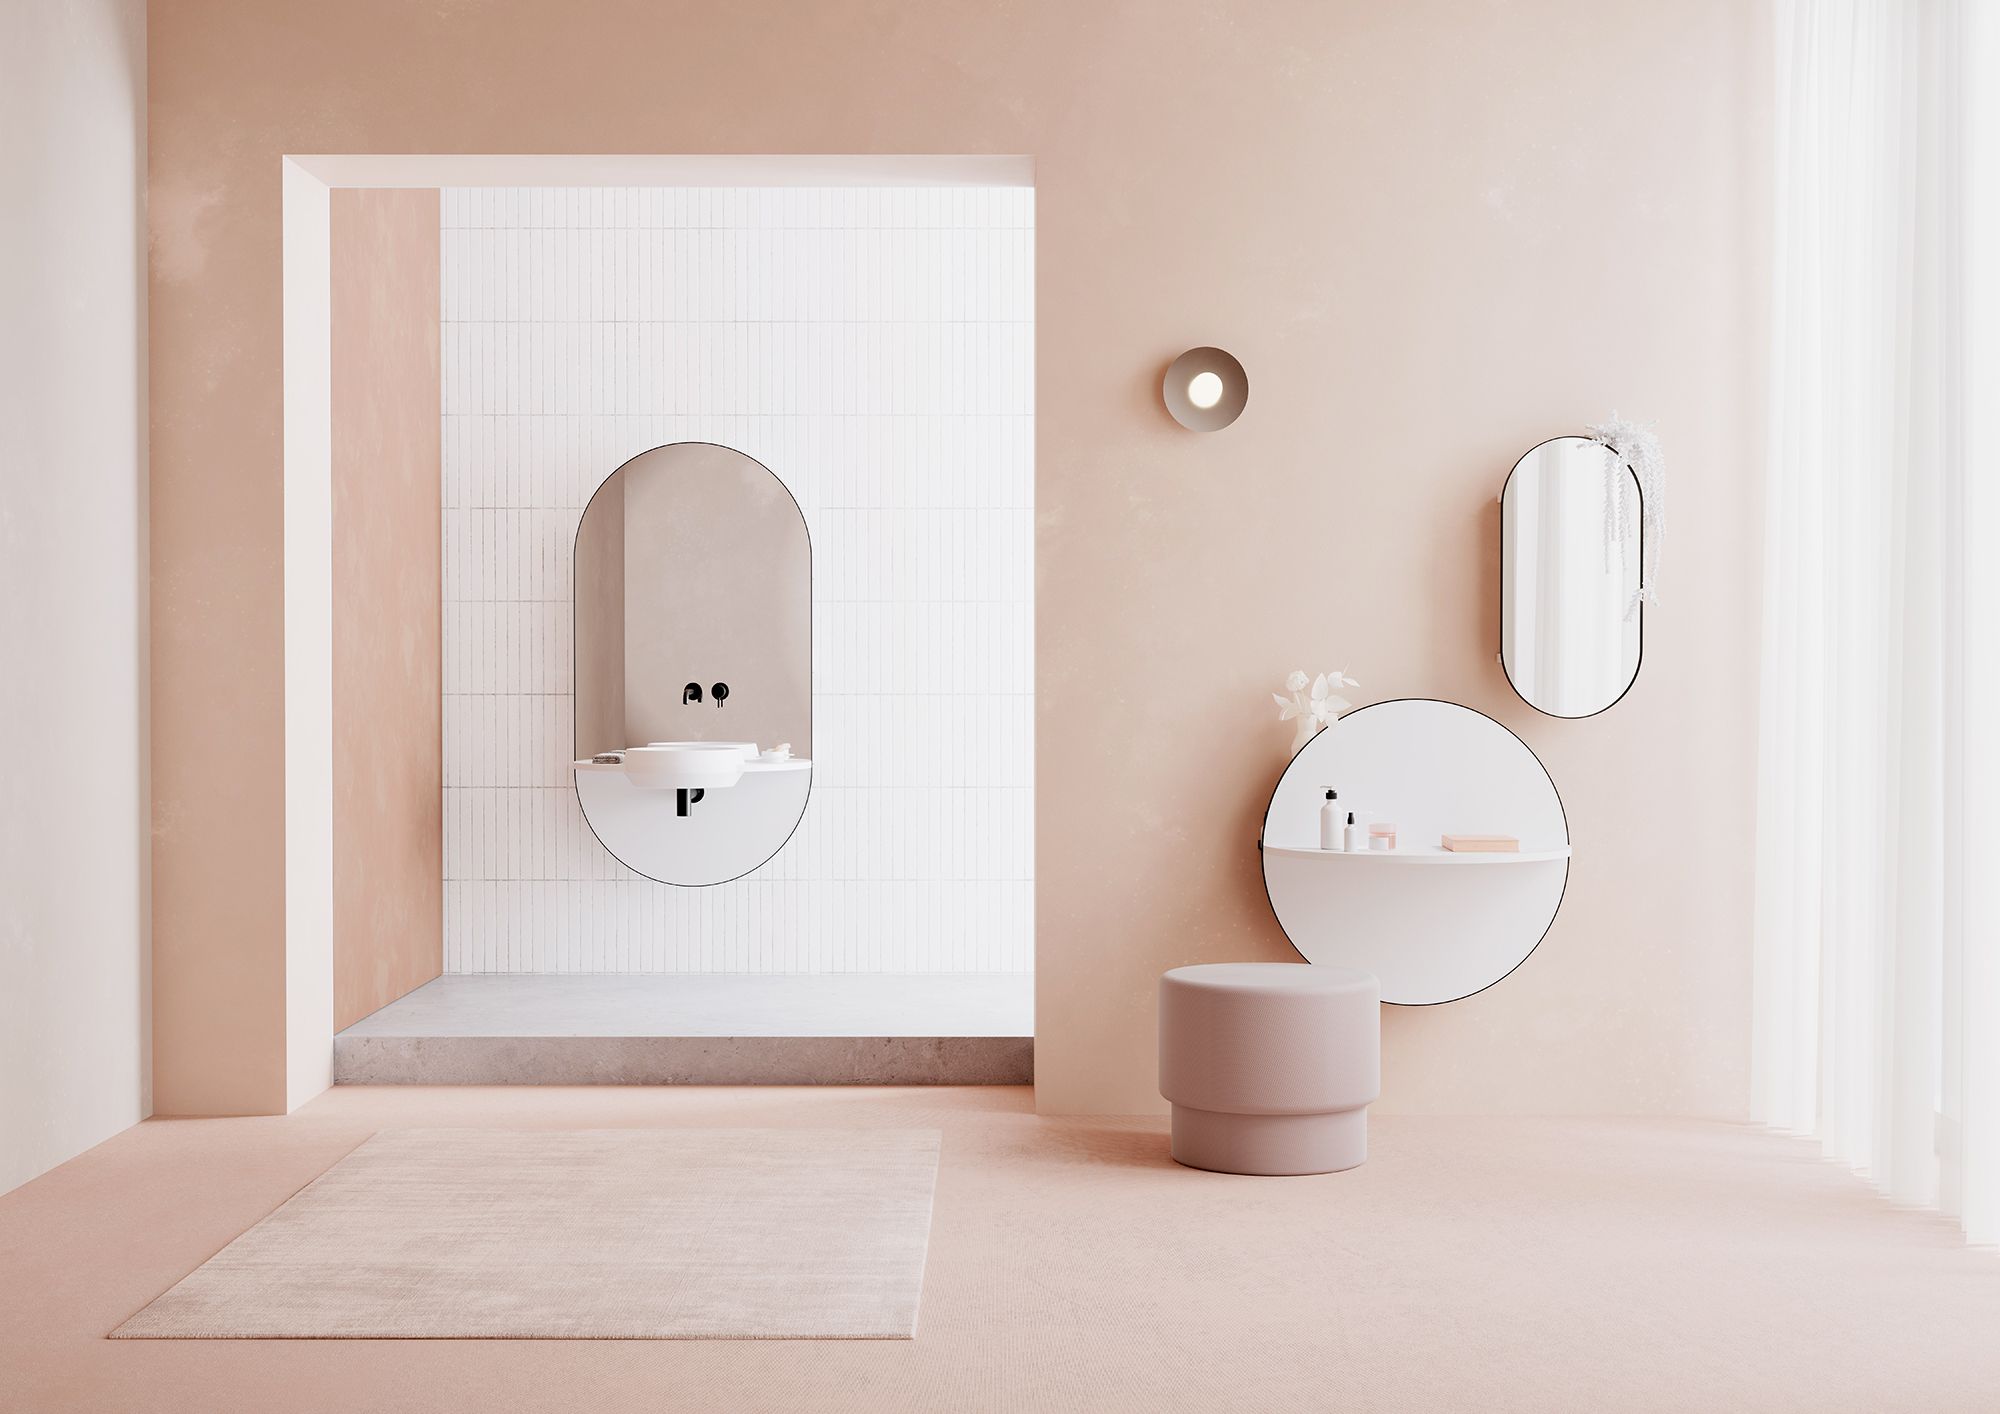 Specchi per bagno - Agata Home Design